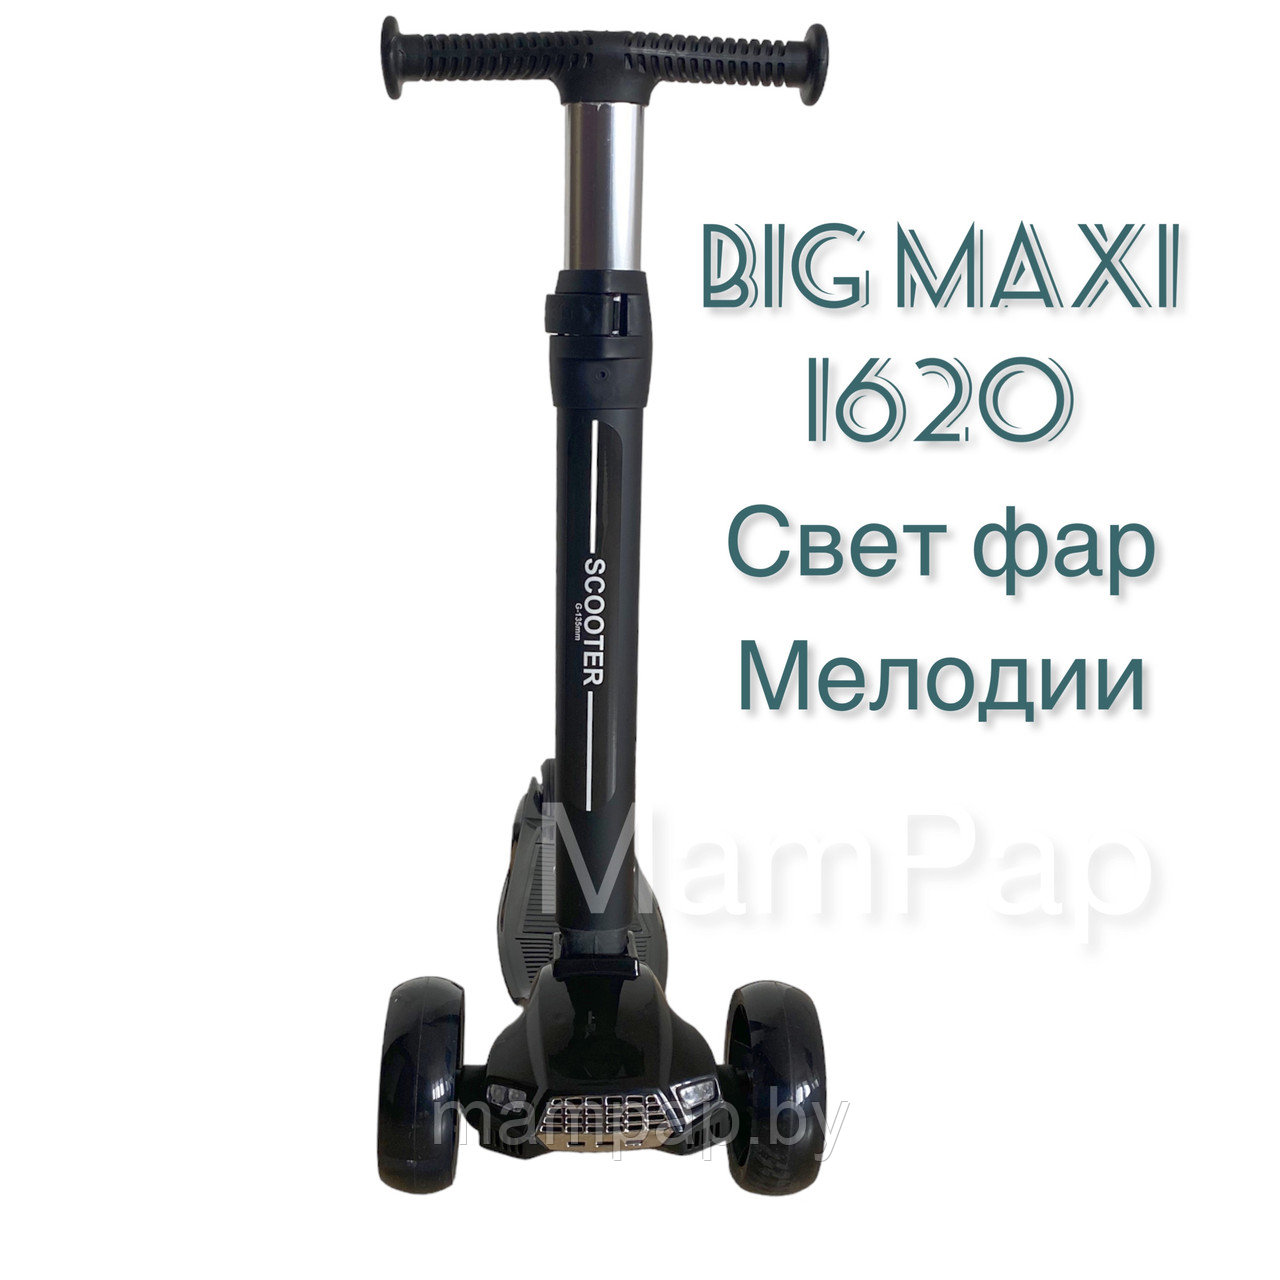 Самокат Big Maxi Scooter 1620| Светящиеся колеса, фары| чисто черный